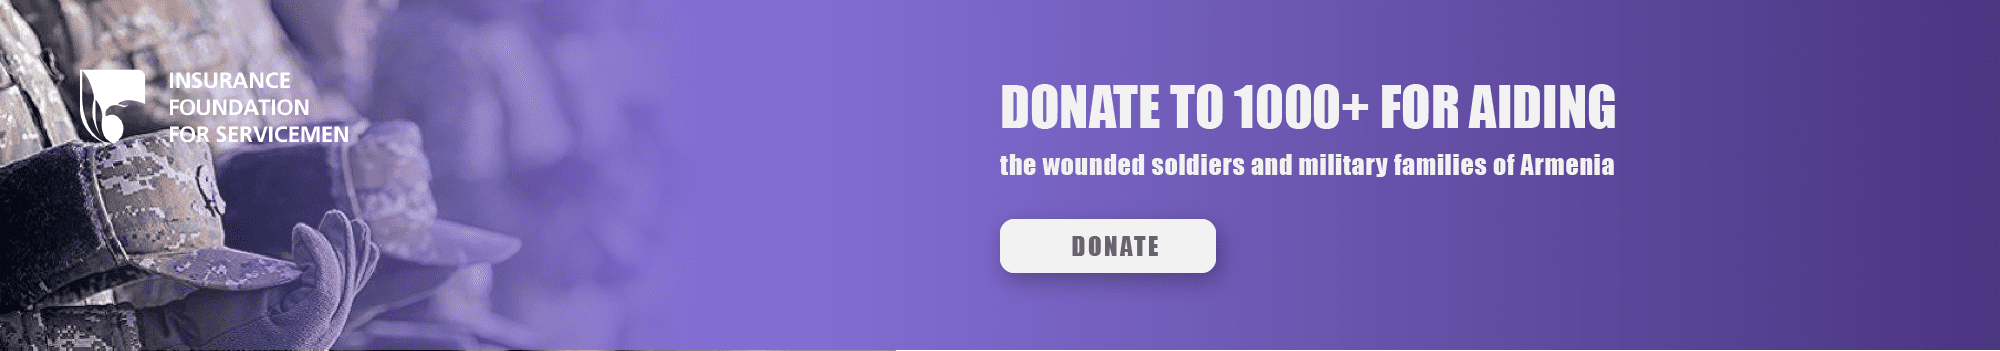 donate_1000plus